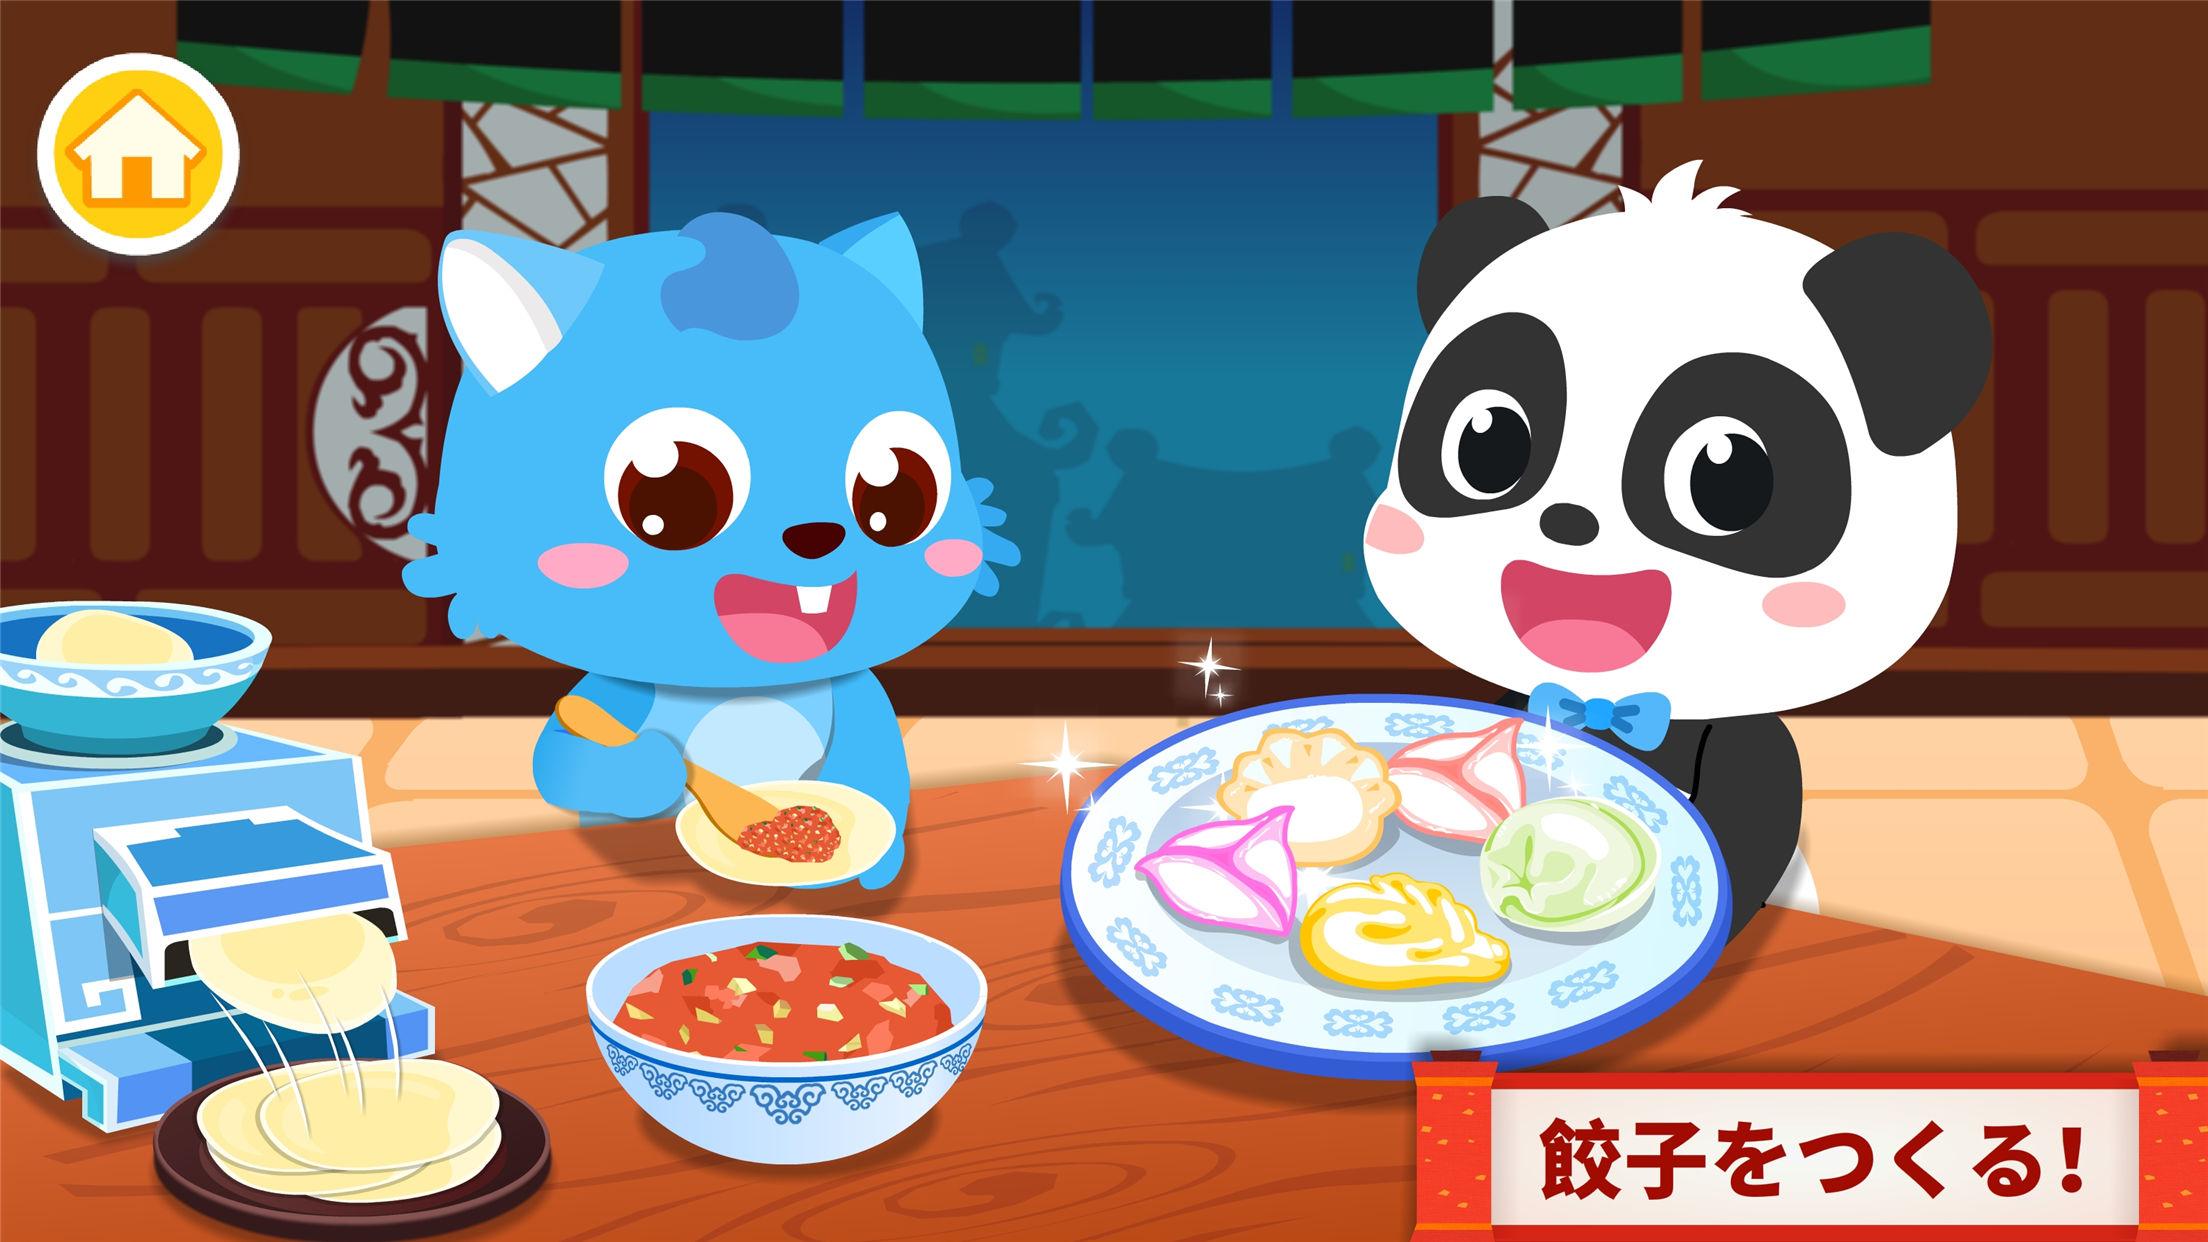 無料で 中華レストラン Babybus 子ども 幼児向けお料理ゲーム アプリの最新版 Apk8 48 00 01をダウンロードー Android用 中華レストラン Babybus 子ども 幼児向けお料理ゲーム Apk の最新バージョンをダウンロード Apkfab Com Jp